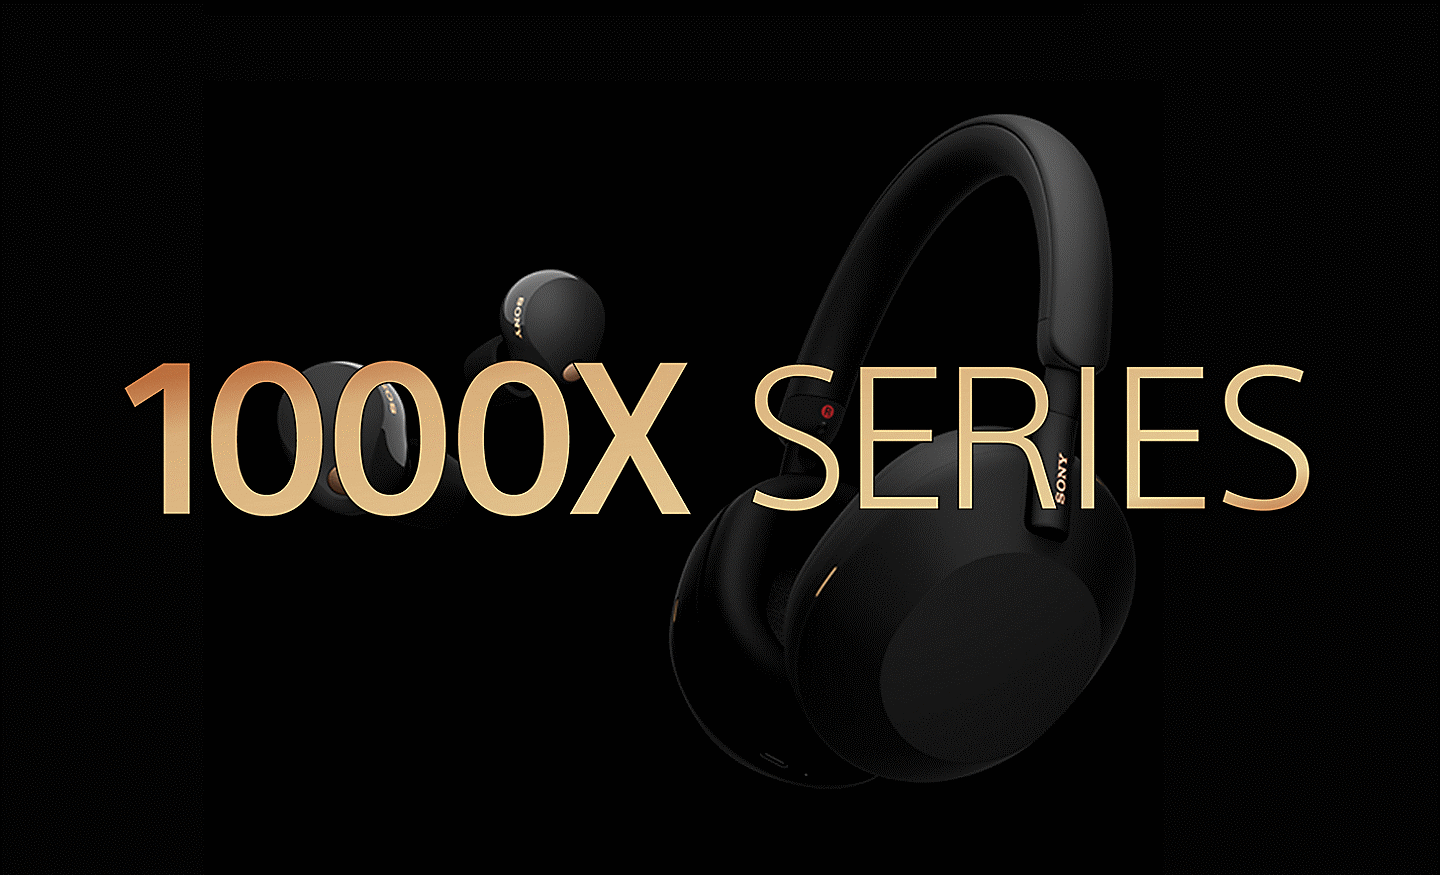 Hình ảnh hai bộ tai nghe Sony trên nền màu đen với dòng chữ DÒNG 1000X màu vàng kim ở phía trước